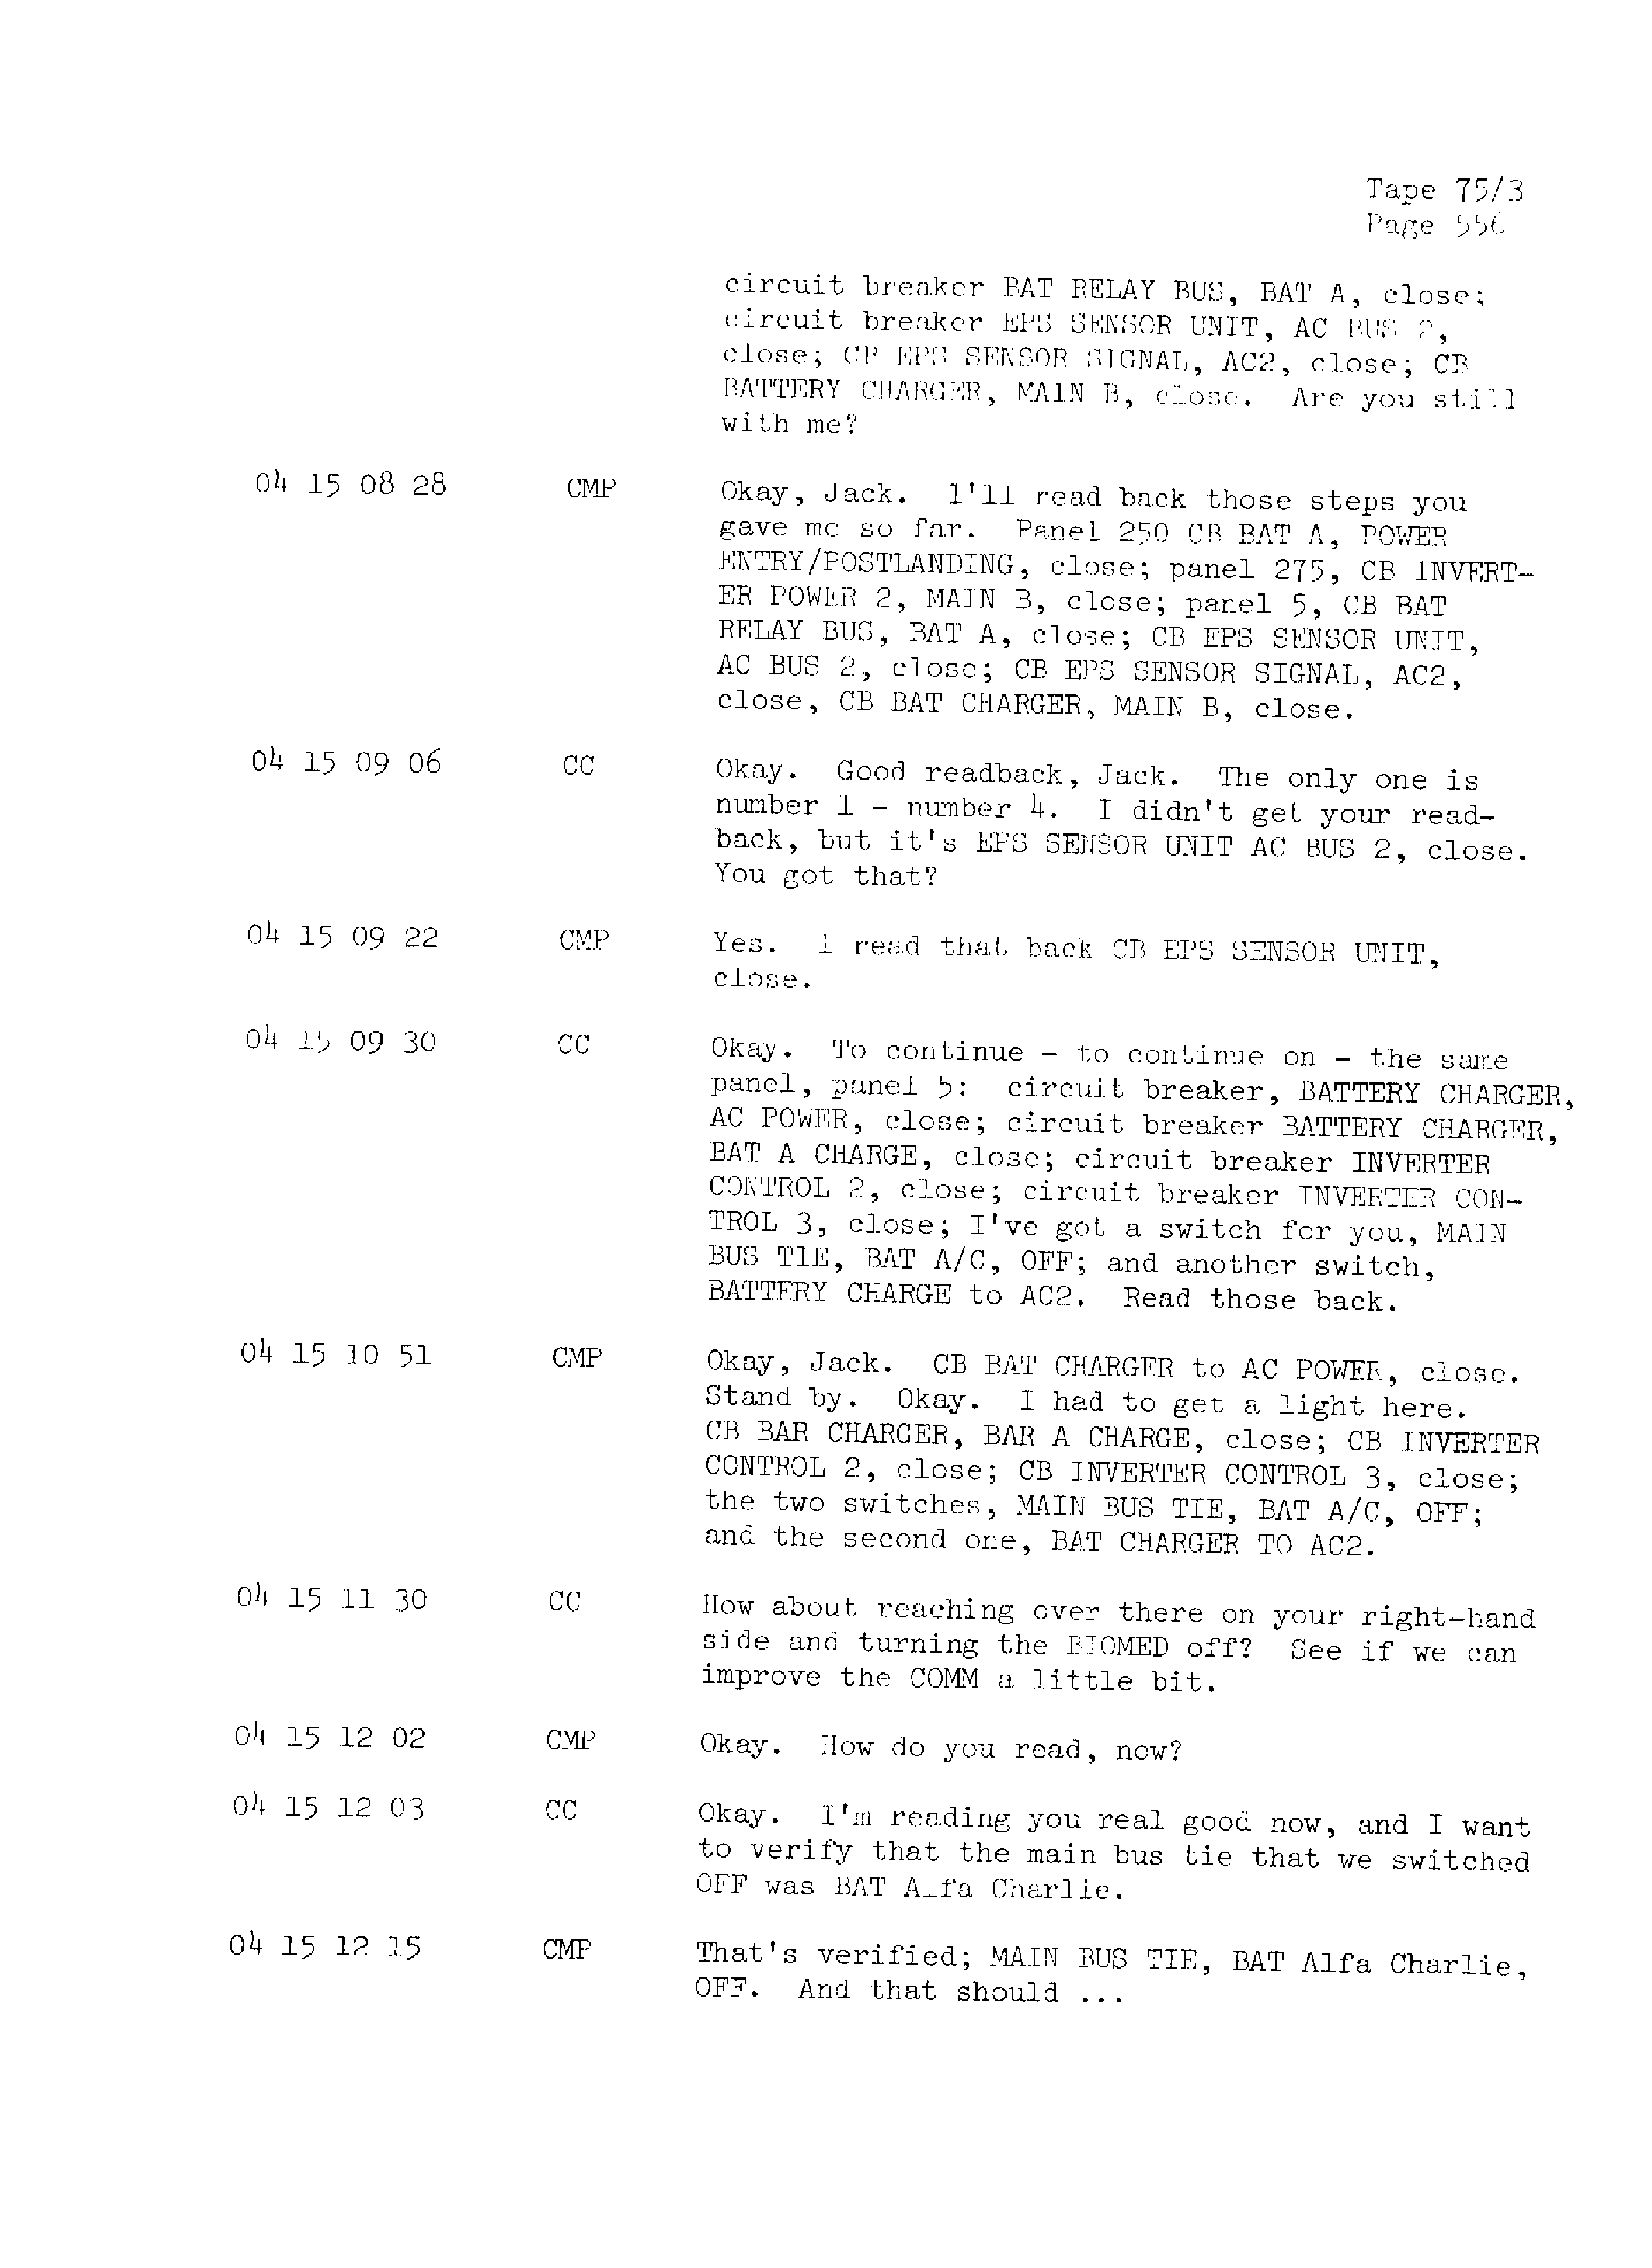 Page 563 of Apollo 13’s original transcript